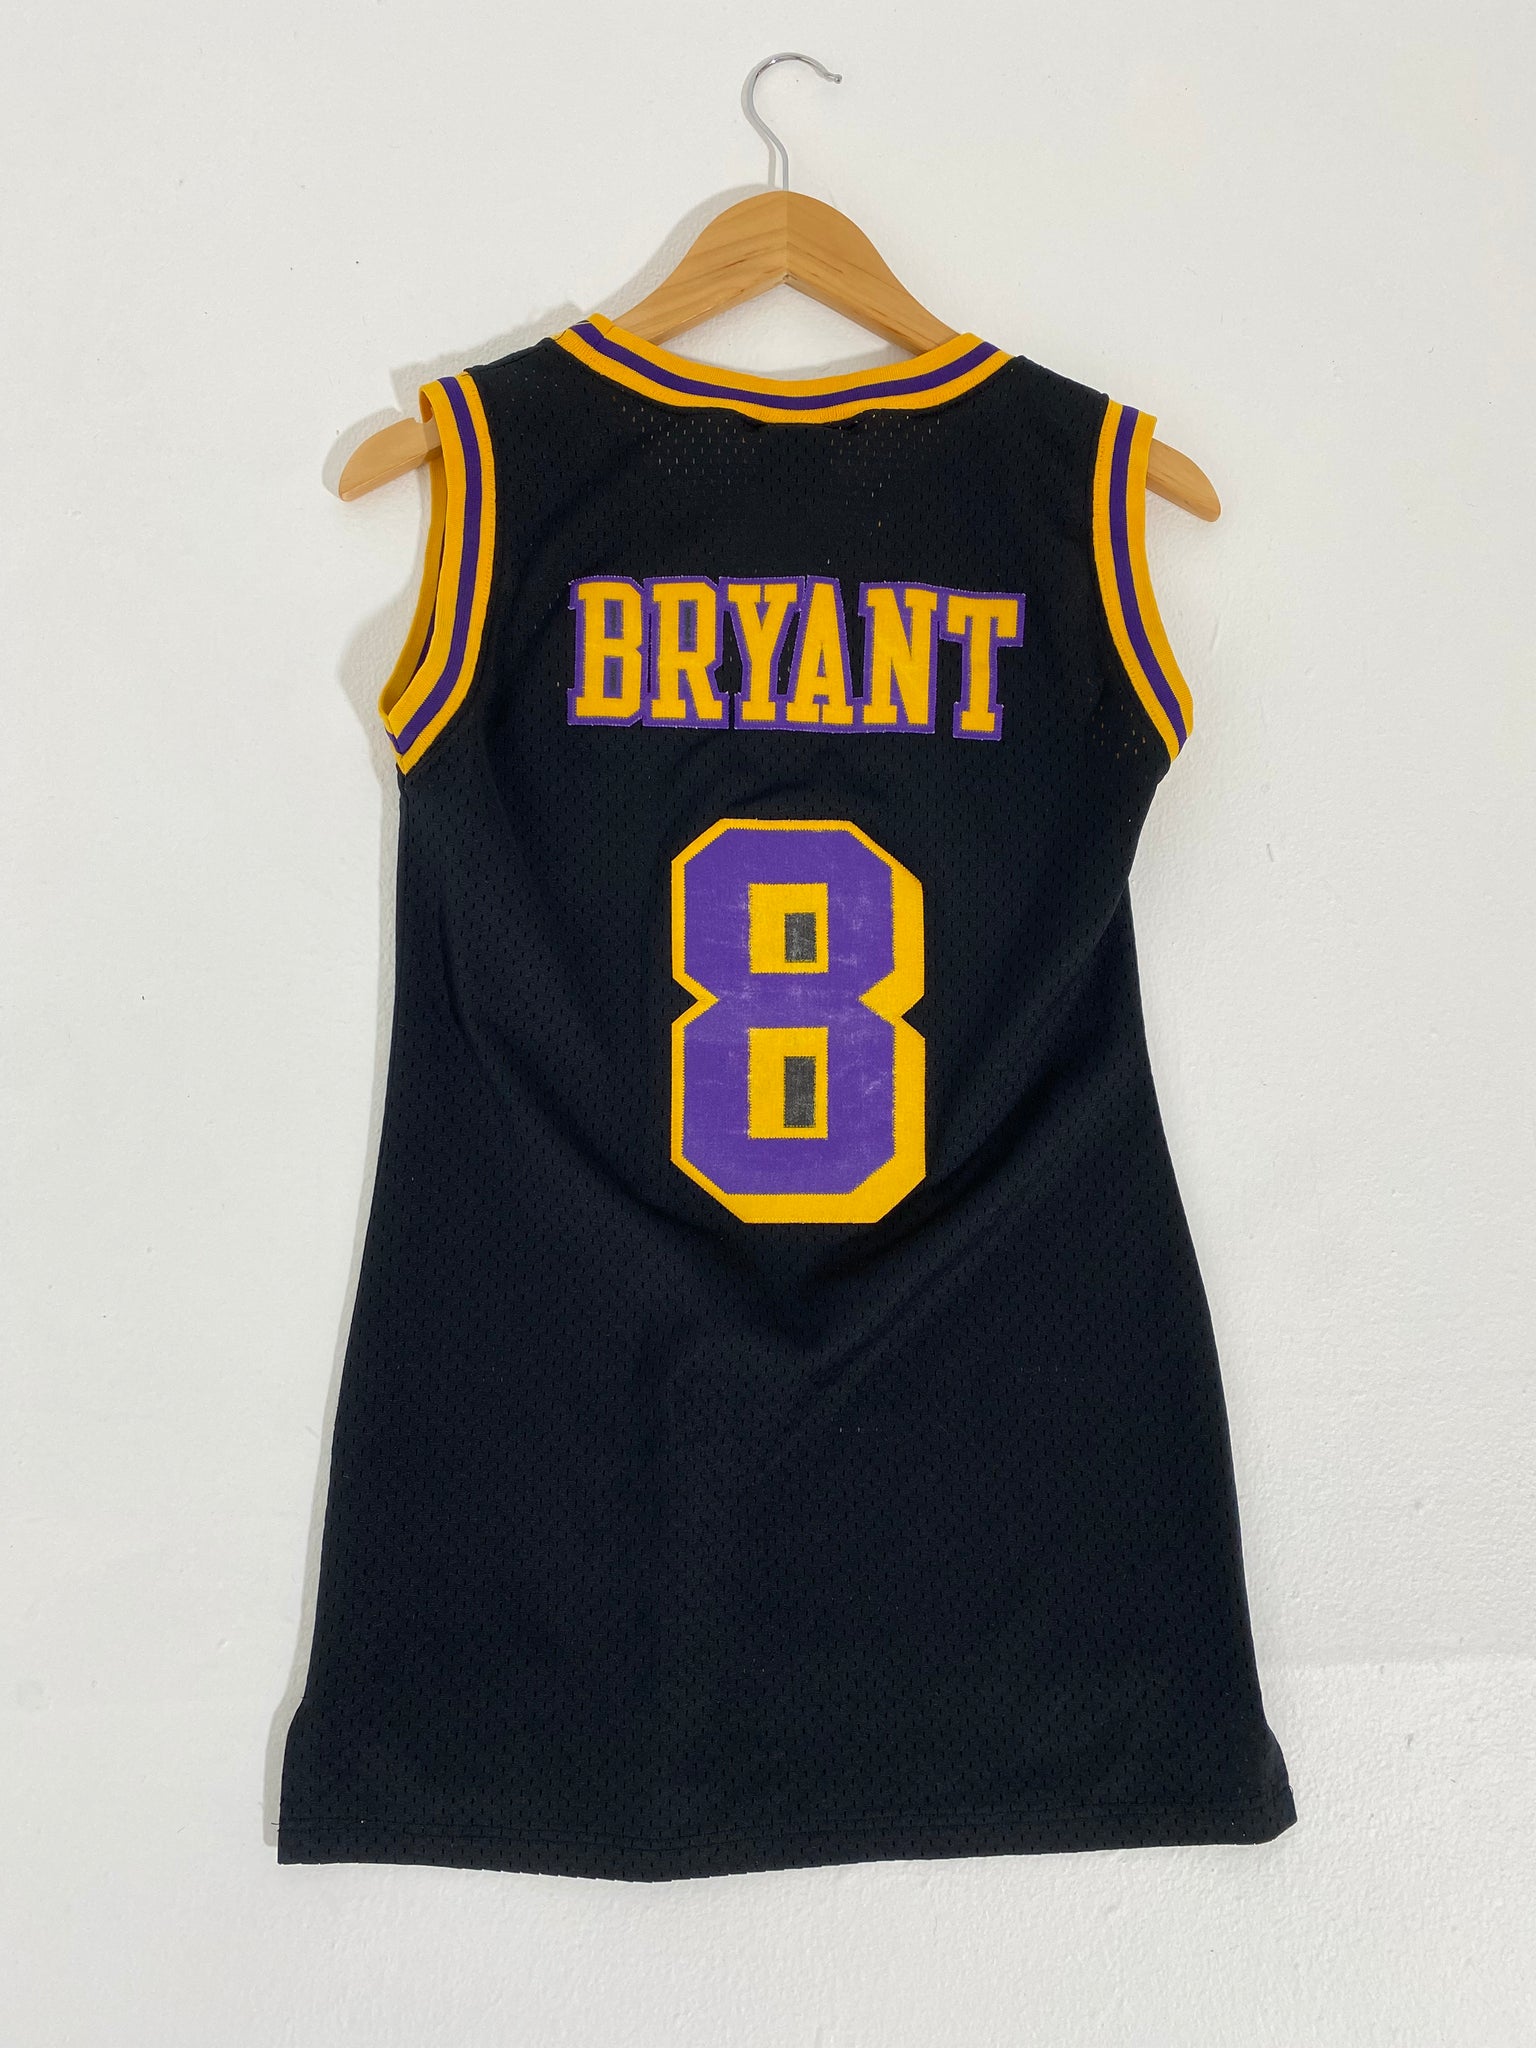 Nike, Shirts & Tops, Vintage Kobe Bryant Kids Jersey Nba Large 2